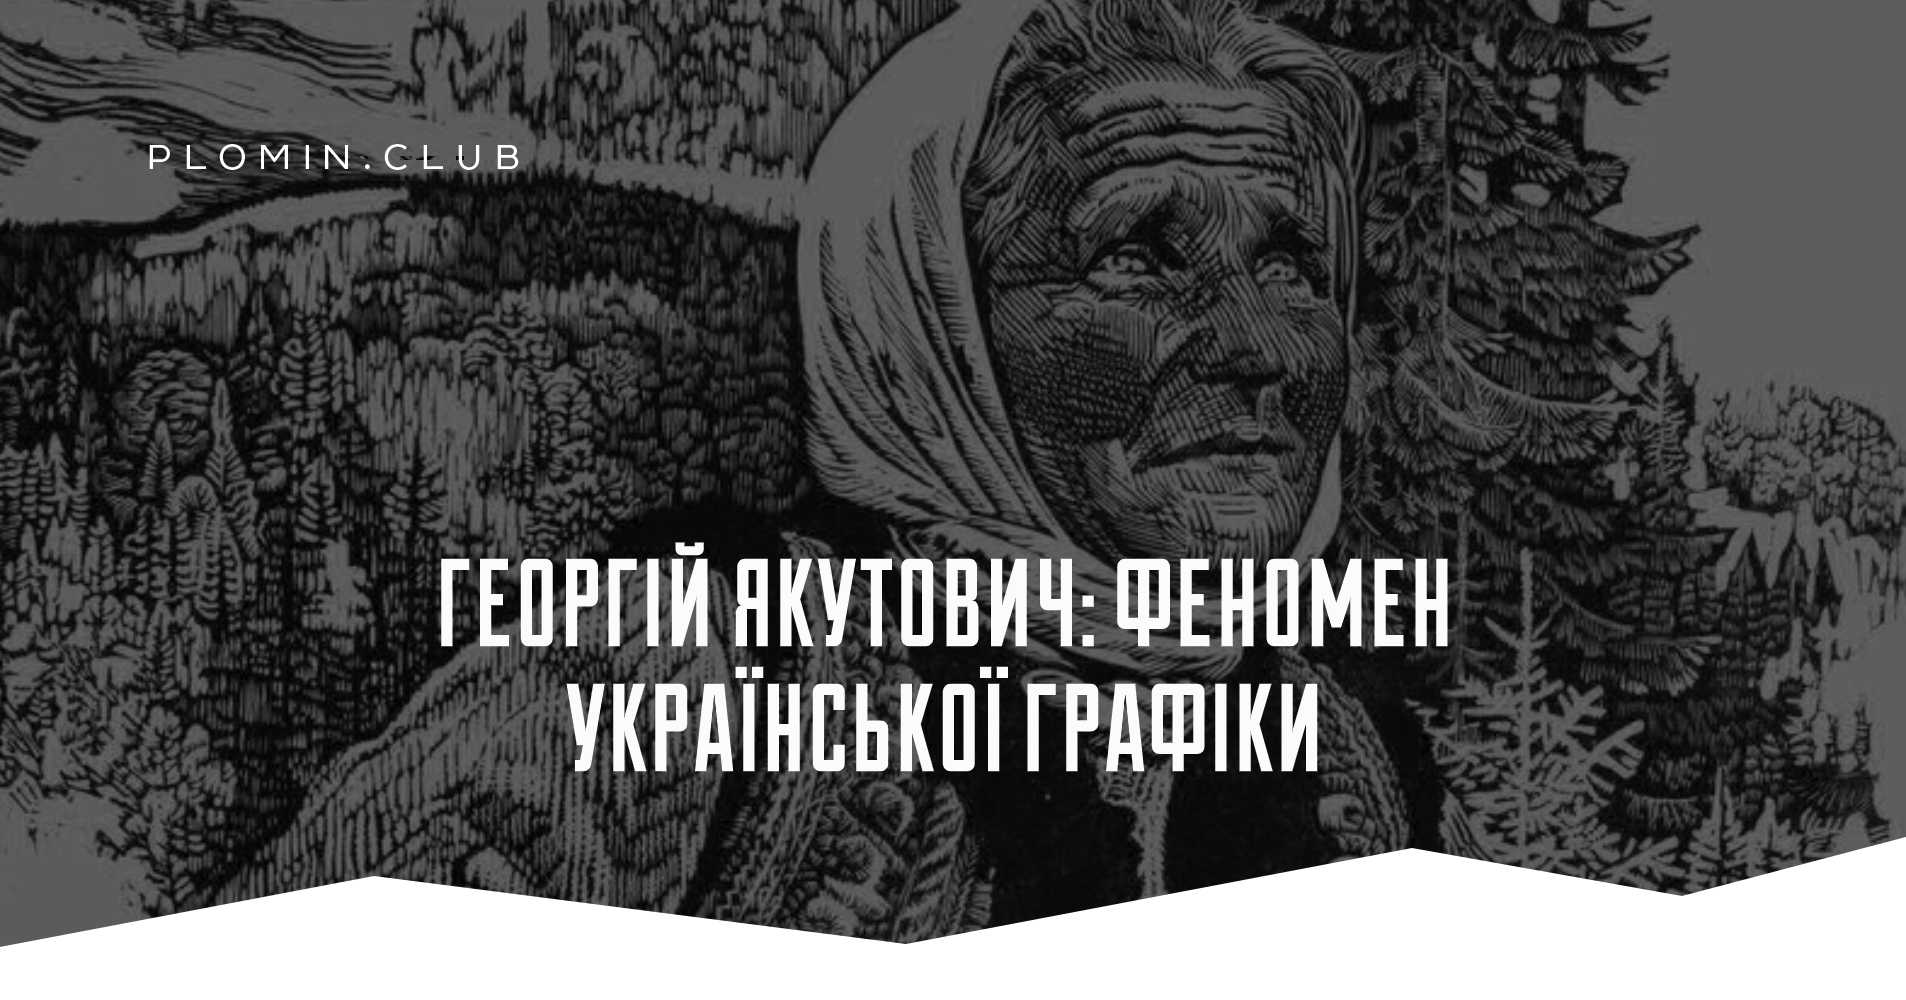 Георгій Якутович: феномен української графіки